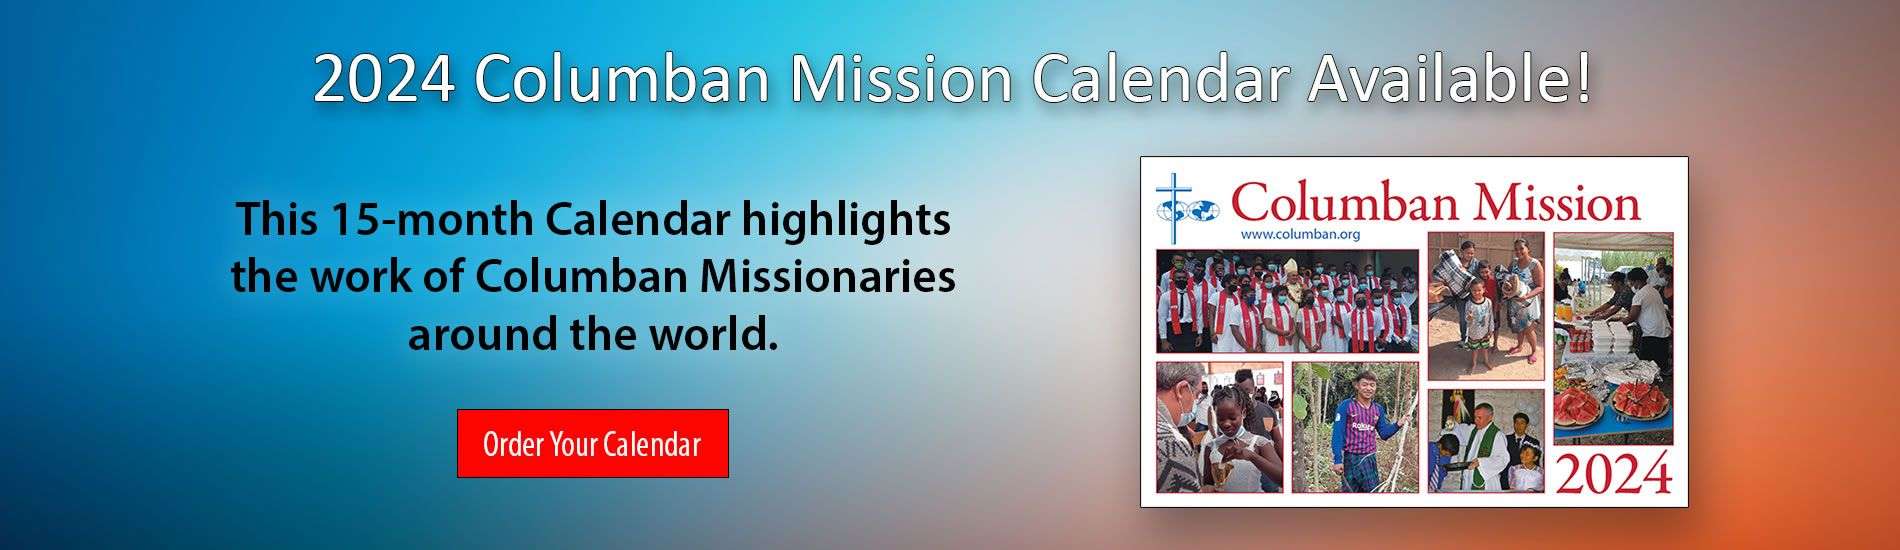 Get your 2024 Columban Mission Calendar